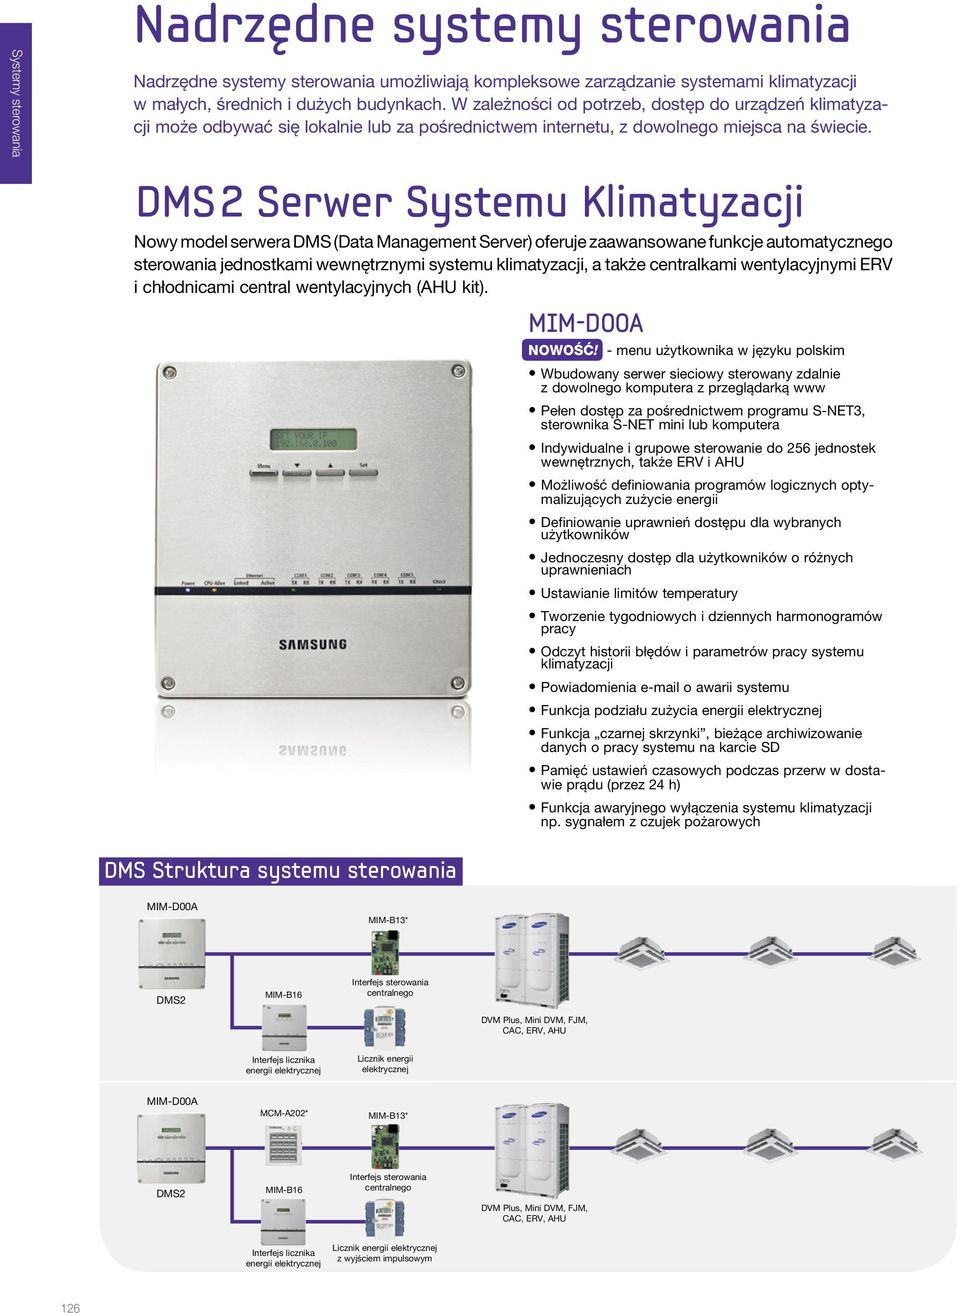 DMS 2 Serwer Systemu Klimatyzacji Nowy model serwera DMS (Data Management Server) oferuje zaawansowane funkcje automatycznego sterowania jednostkami wewnętrznymi systemu klimatyzacji, a także